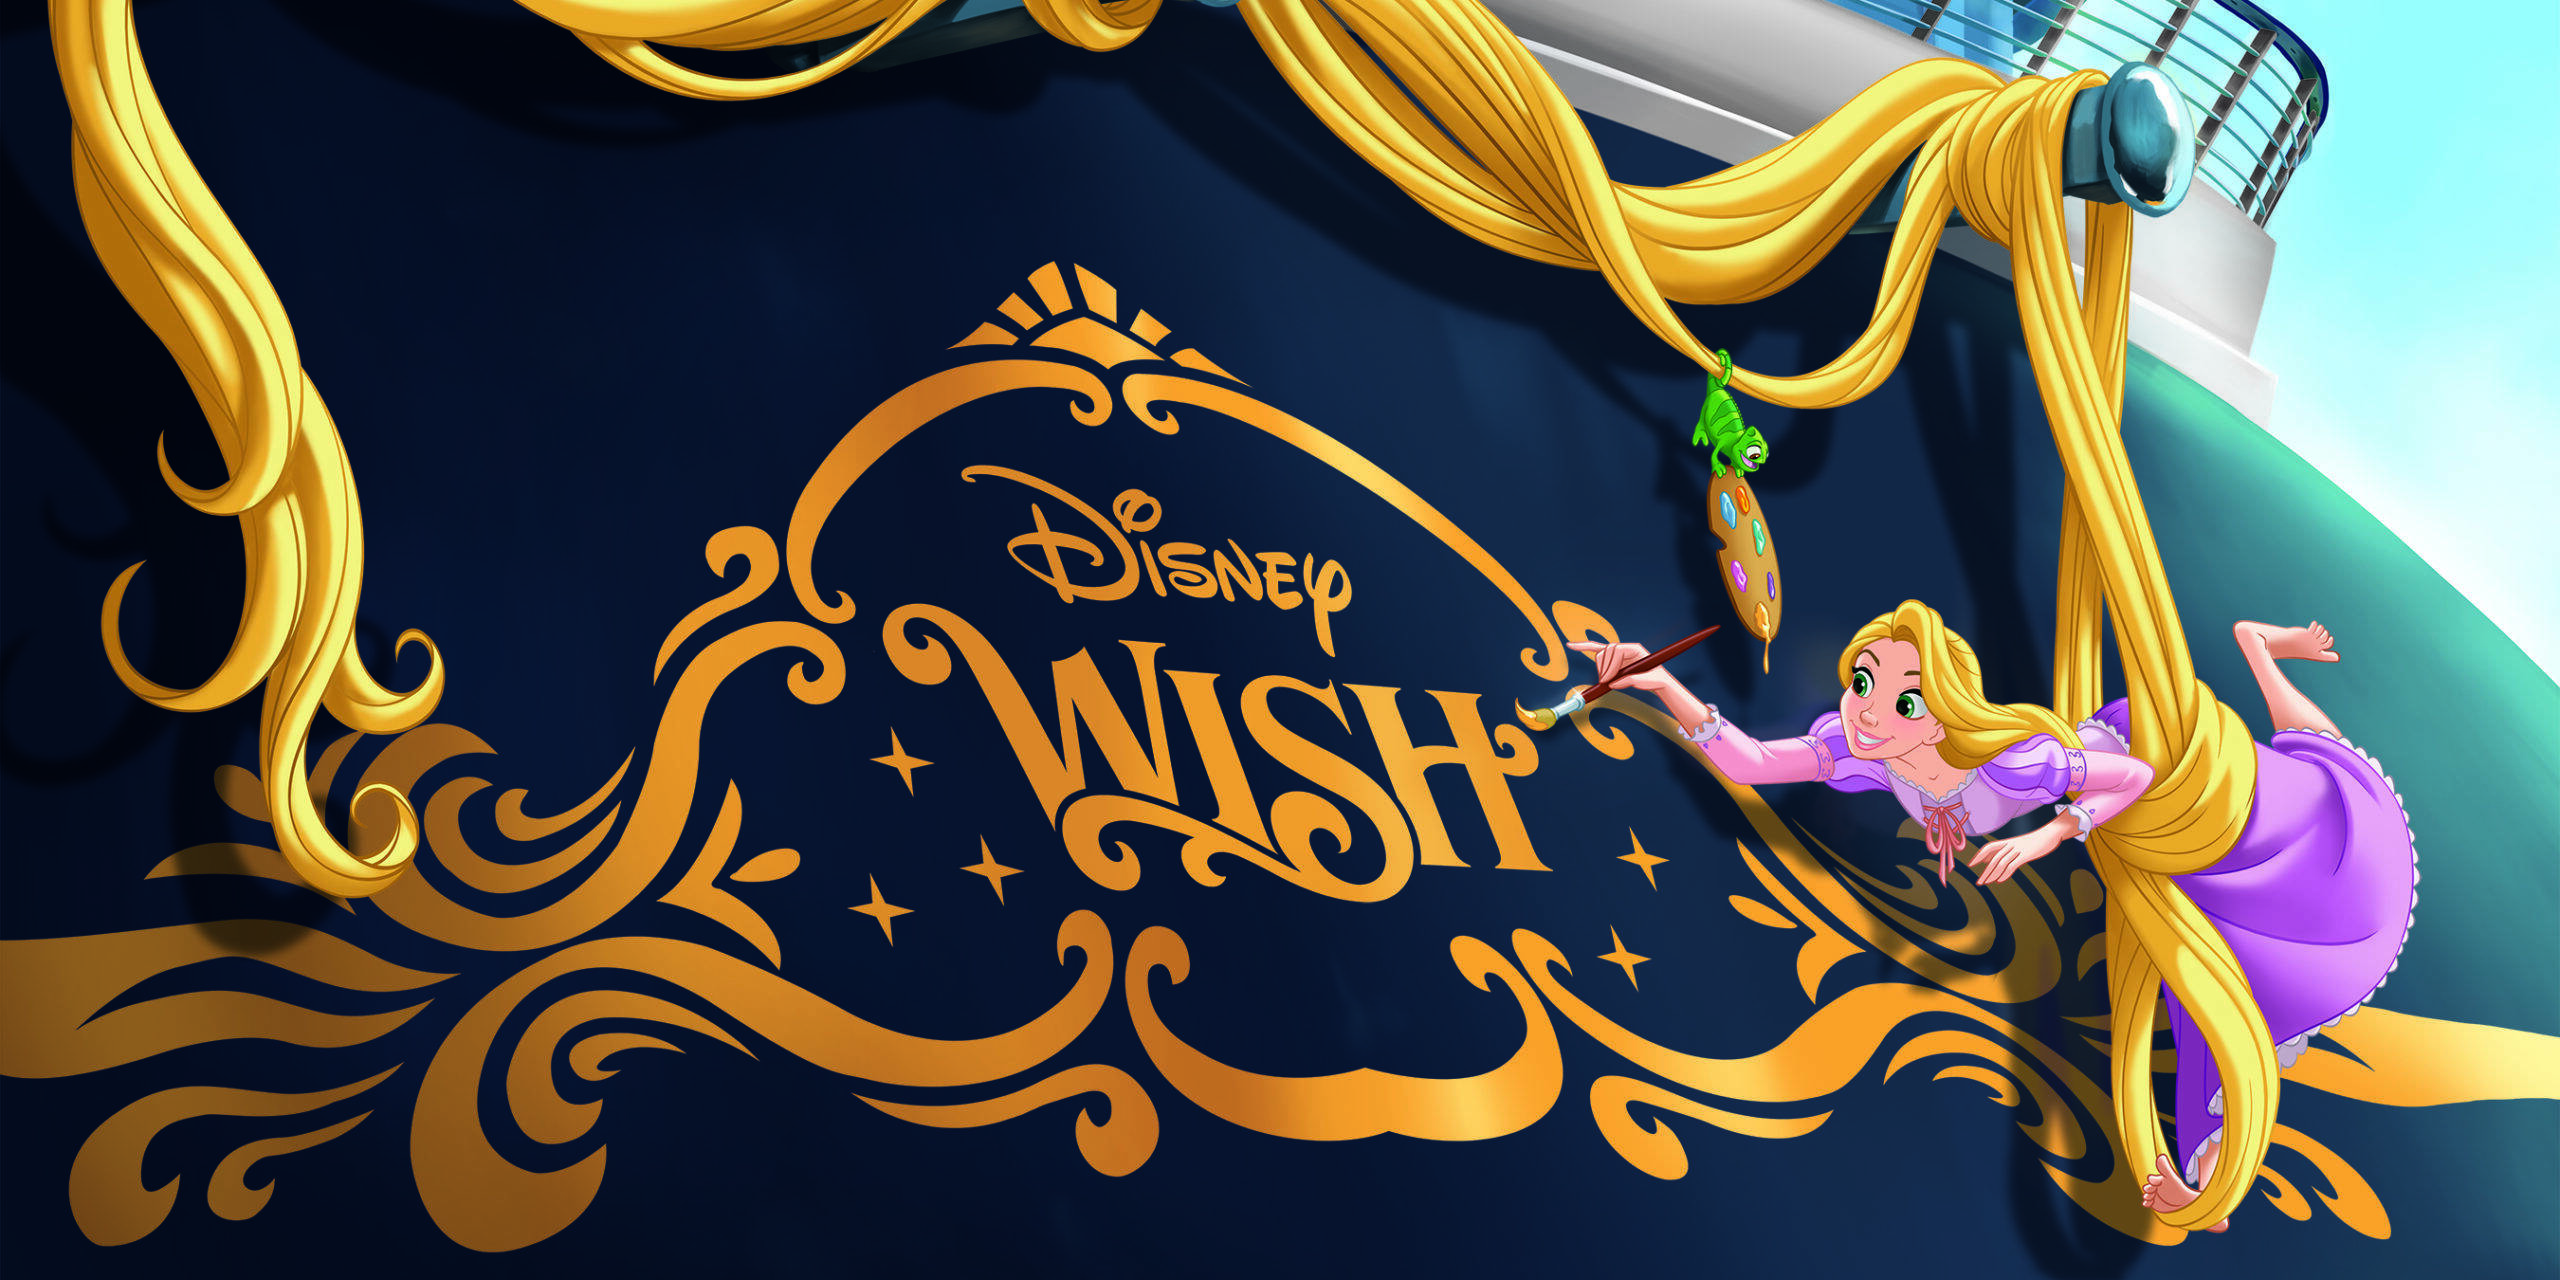 Die Zeichentrick-Figur Rapunzel wird das Heck der Disney Wish zieren. Foto: Disney